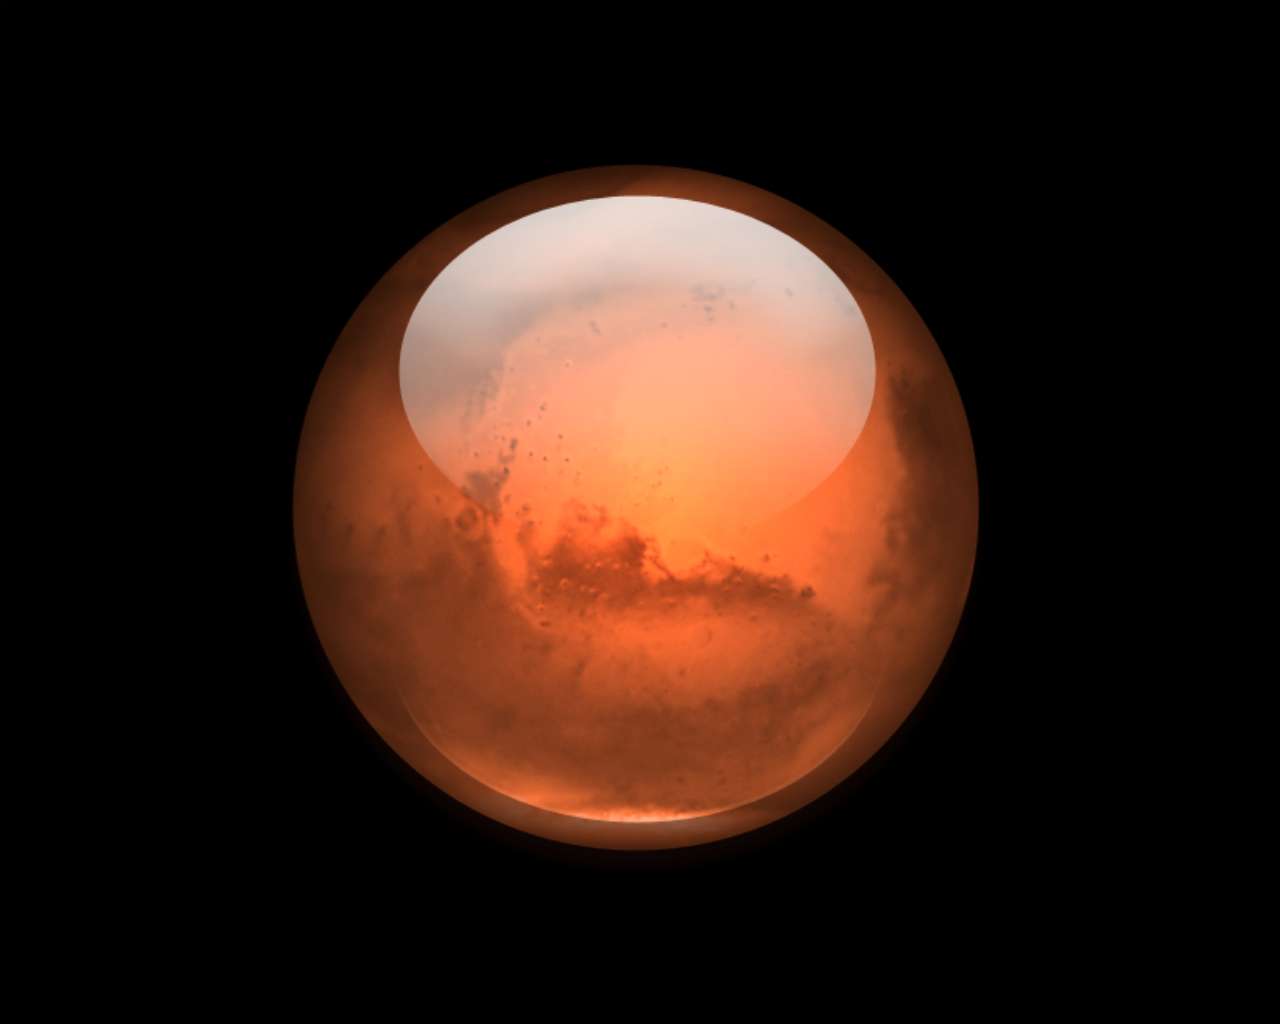 Mars HD Wallpaper